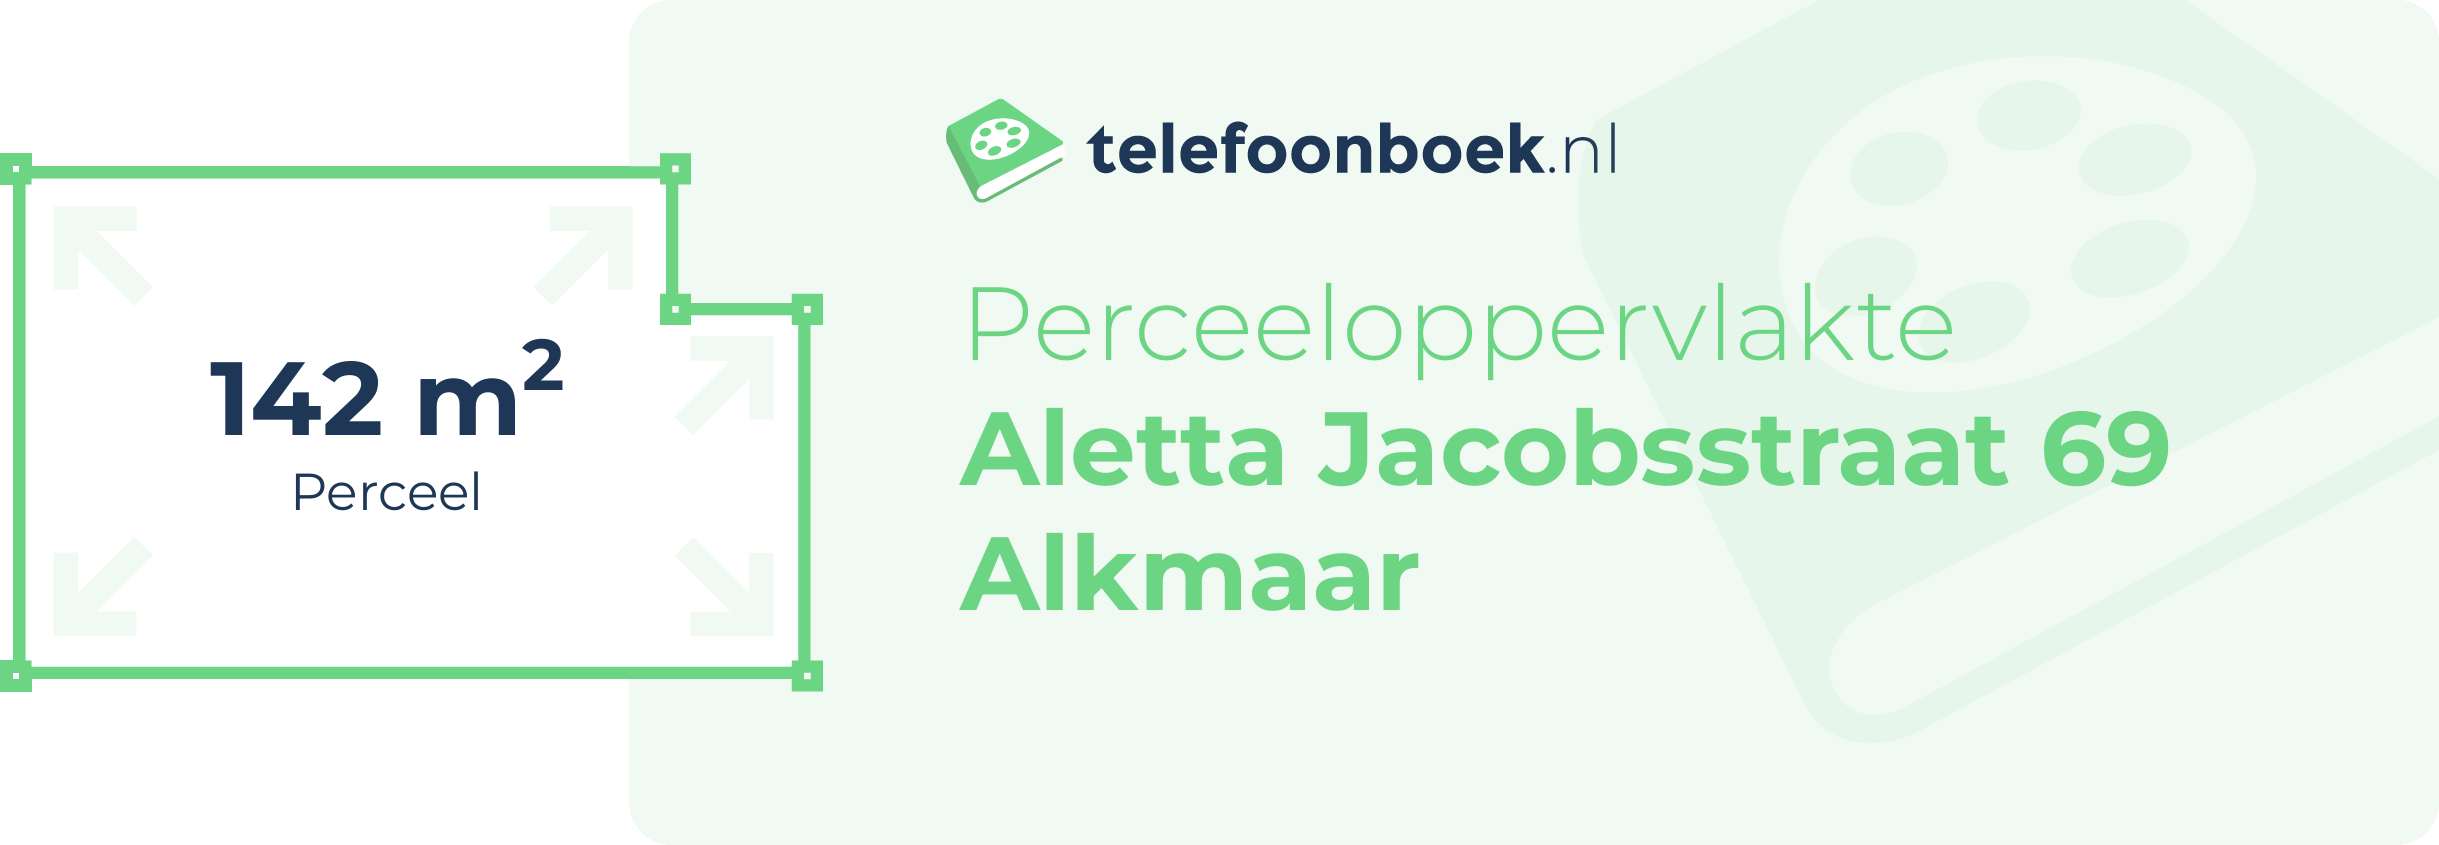 Perceeloppervlakte Aletta Jacobsstraat 69 Alkmaar